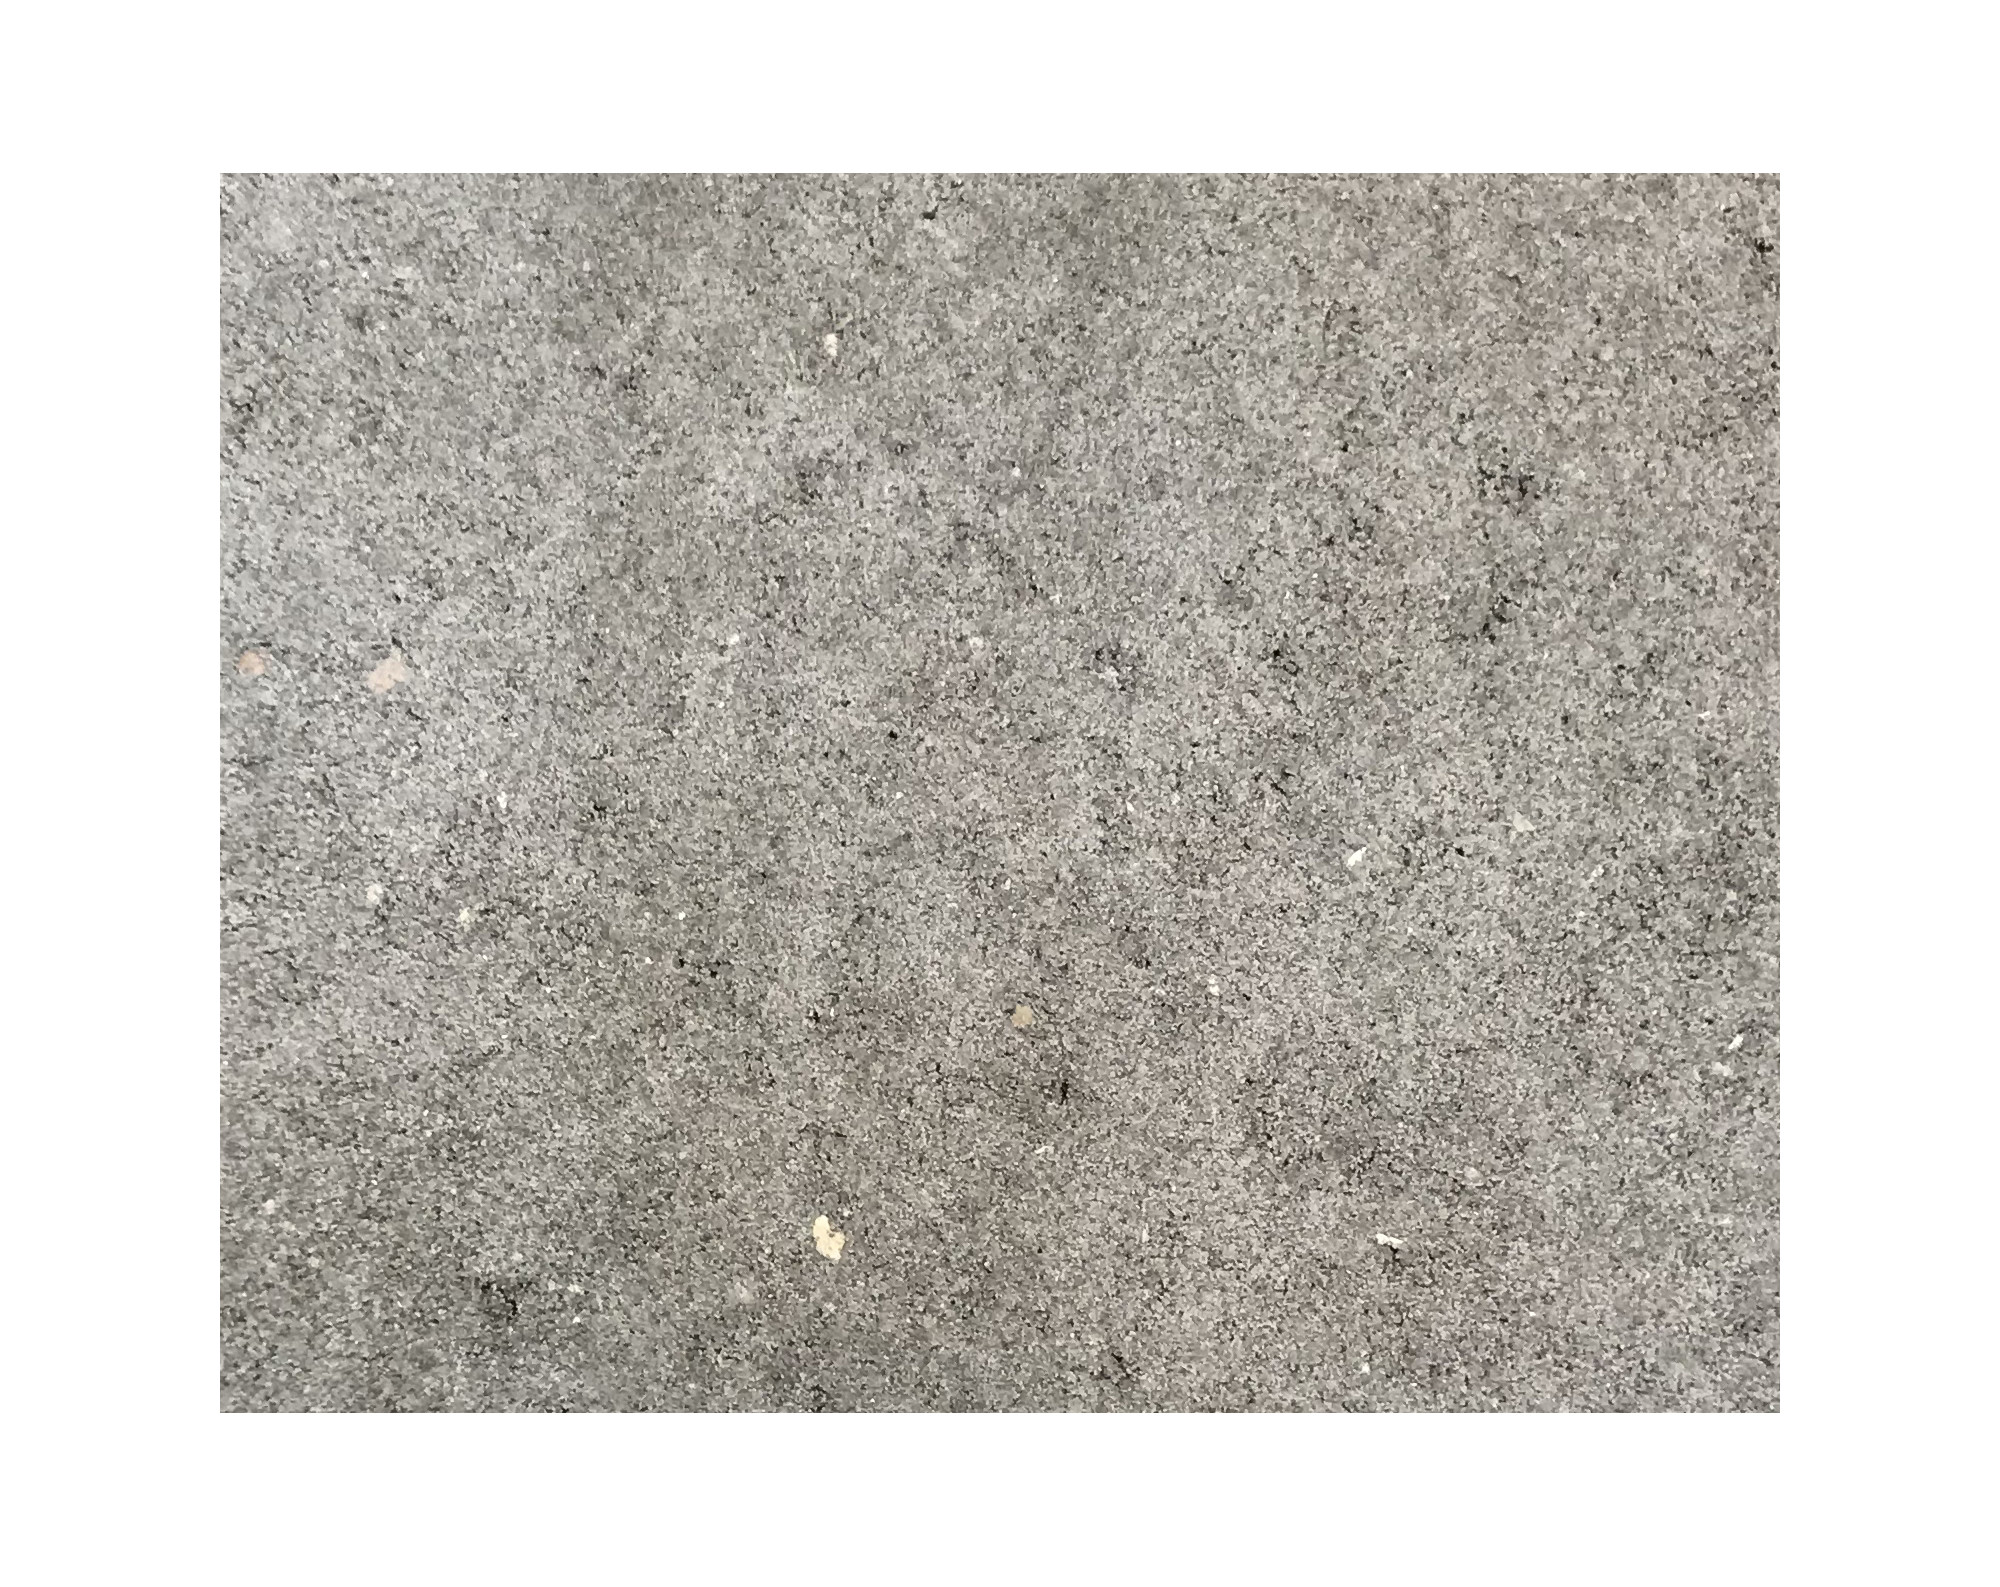 Harmo roc athenset, rustica-serie, ovaal d: 3,50mx7,50m, grijs, beton